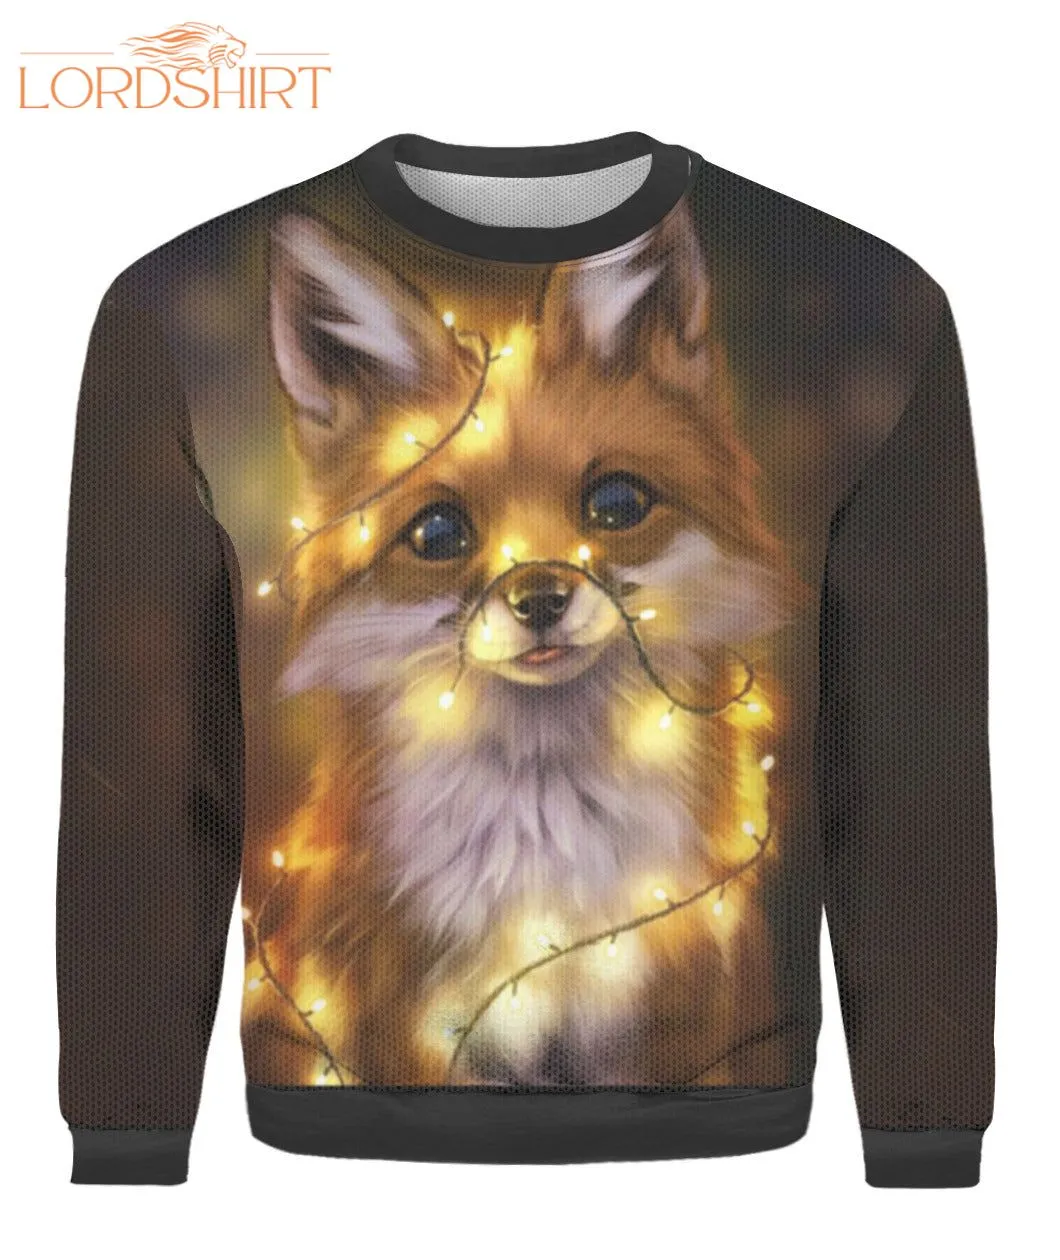 Fox Merry Christmas Ugly Christmas Sweater